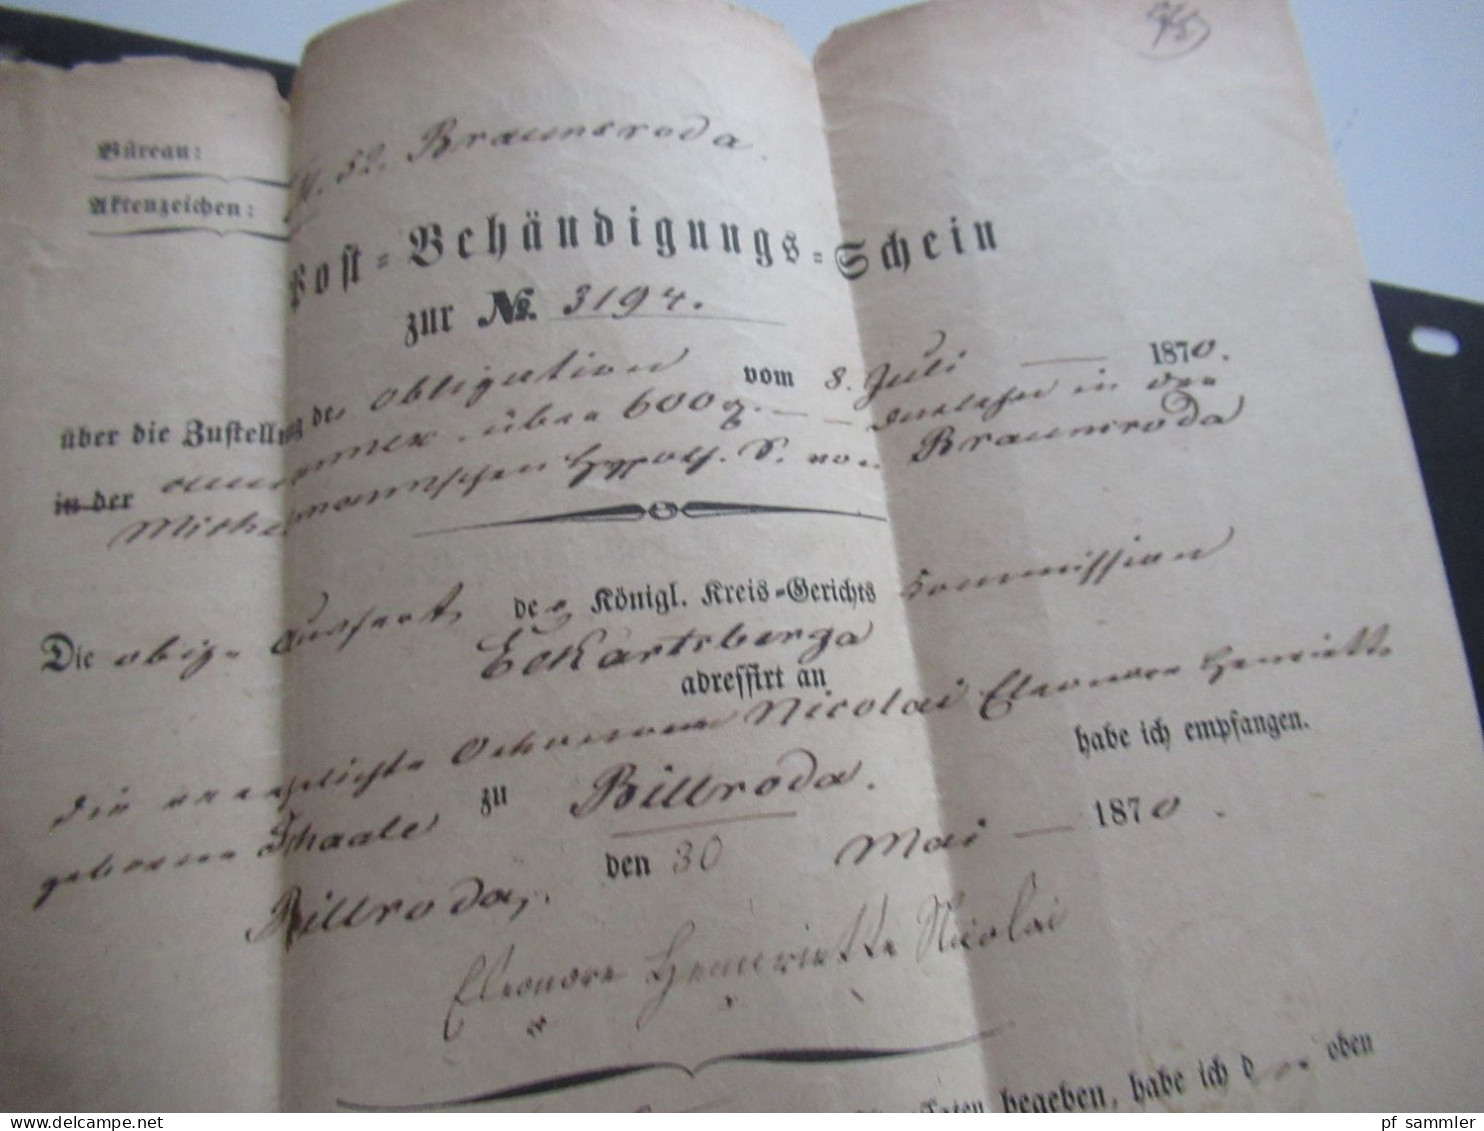 AD Sachsen 1870 Post Behändigungs Schein Mit Stempel K2 Wiehe Nach Eckartsberga - Saxony